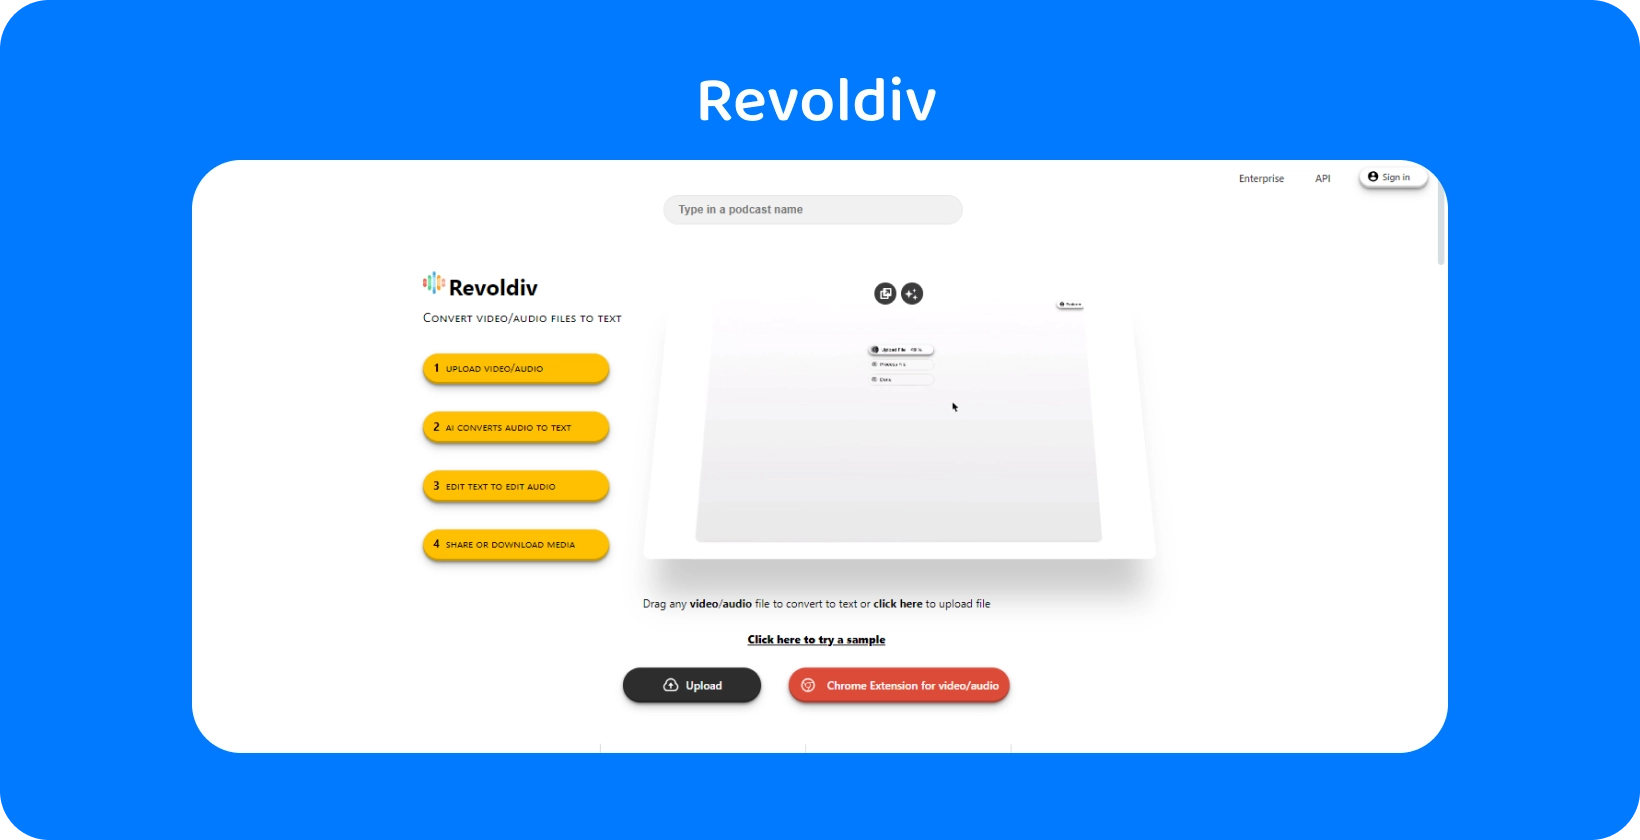 Revoldiv'in ses yüklemeleri ve metne dönüştürme için hazır, basitliği ve verimliliği sergileyen şık web arayüzü.